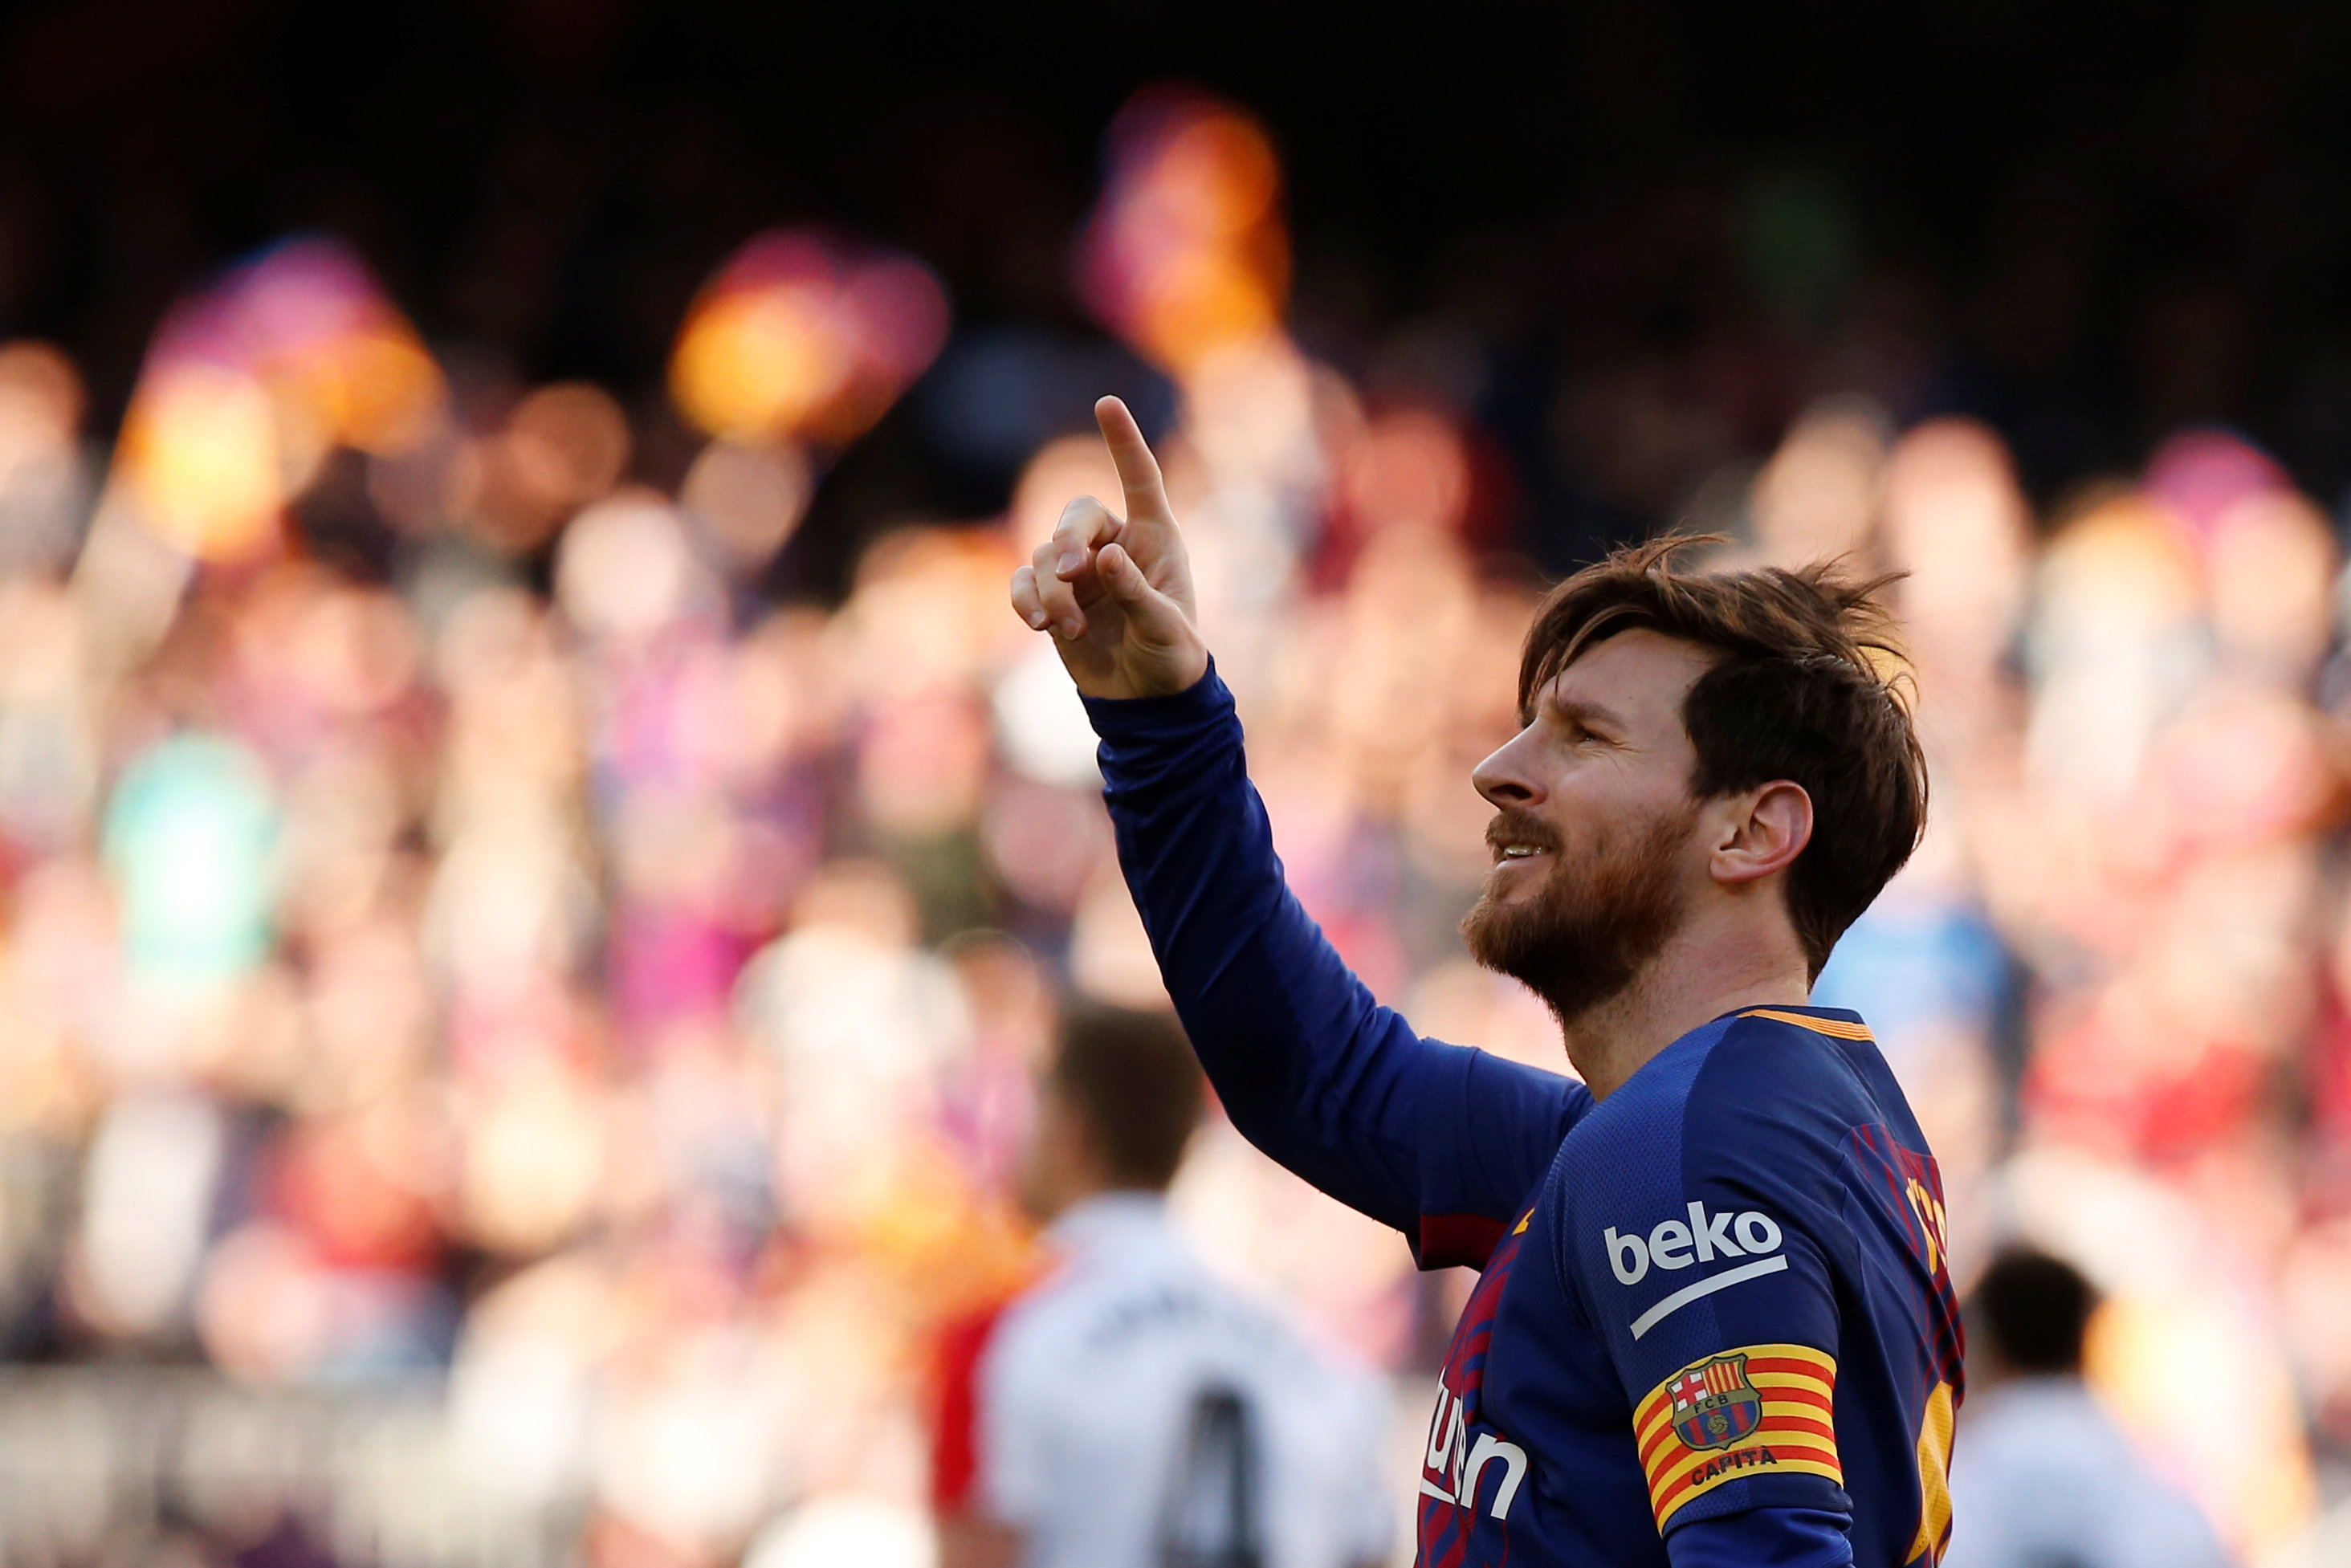 Lionel Messi không chỉ là cầu thủ siêu sao mà còn là người gây cảm hứng cho hàng triệu người hâm mộ bóng đá trên khắp thế giới. Xem những bức ảnh của anh ta hy vọng sẽ truyền tải cho bạn một chút trong sáng, sự nỗ lực và tinh thần chiến đấu của Messi, để bạn có thể thành công như anh ta.